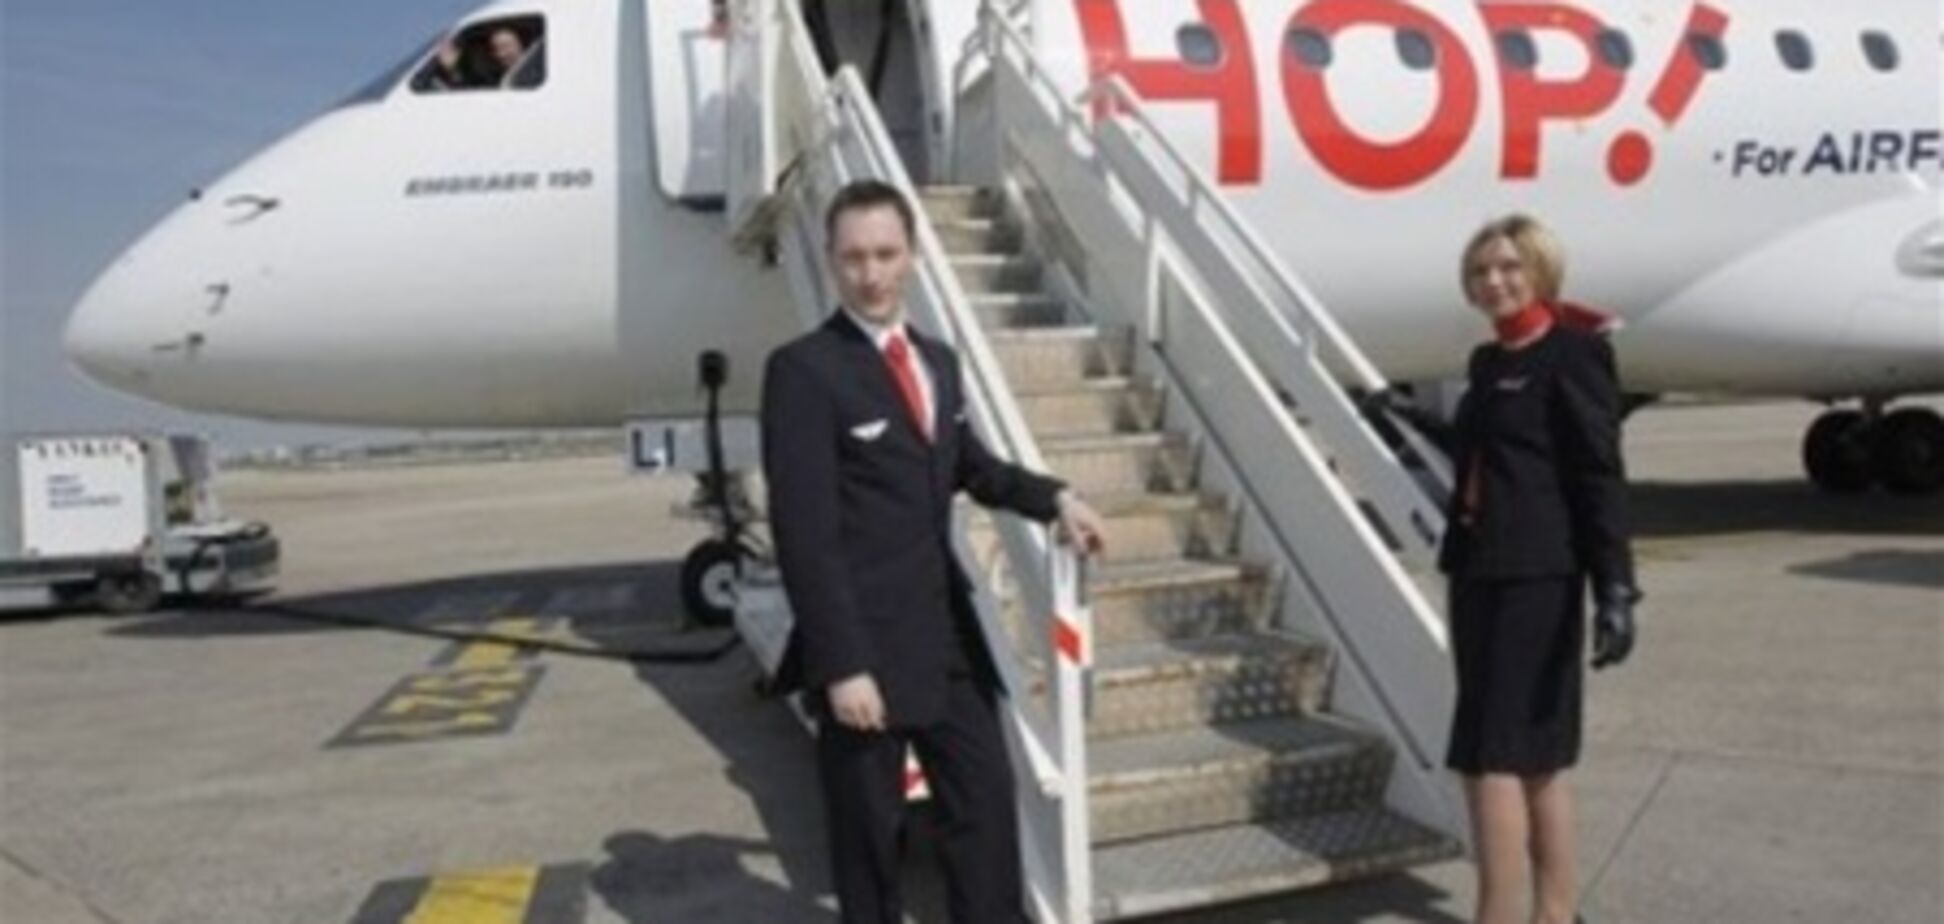 'Air France' запускает лоу-кост авиакомпанию 'Hop!' с авиапарком в 100 самолетов!